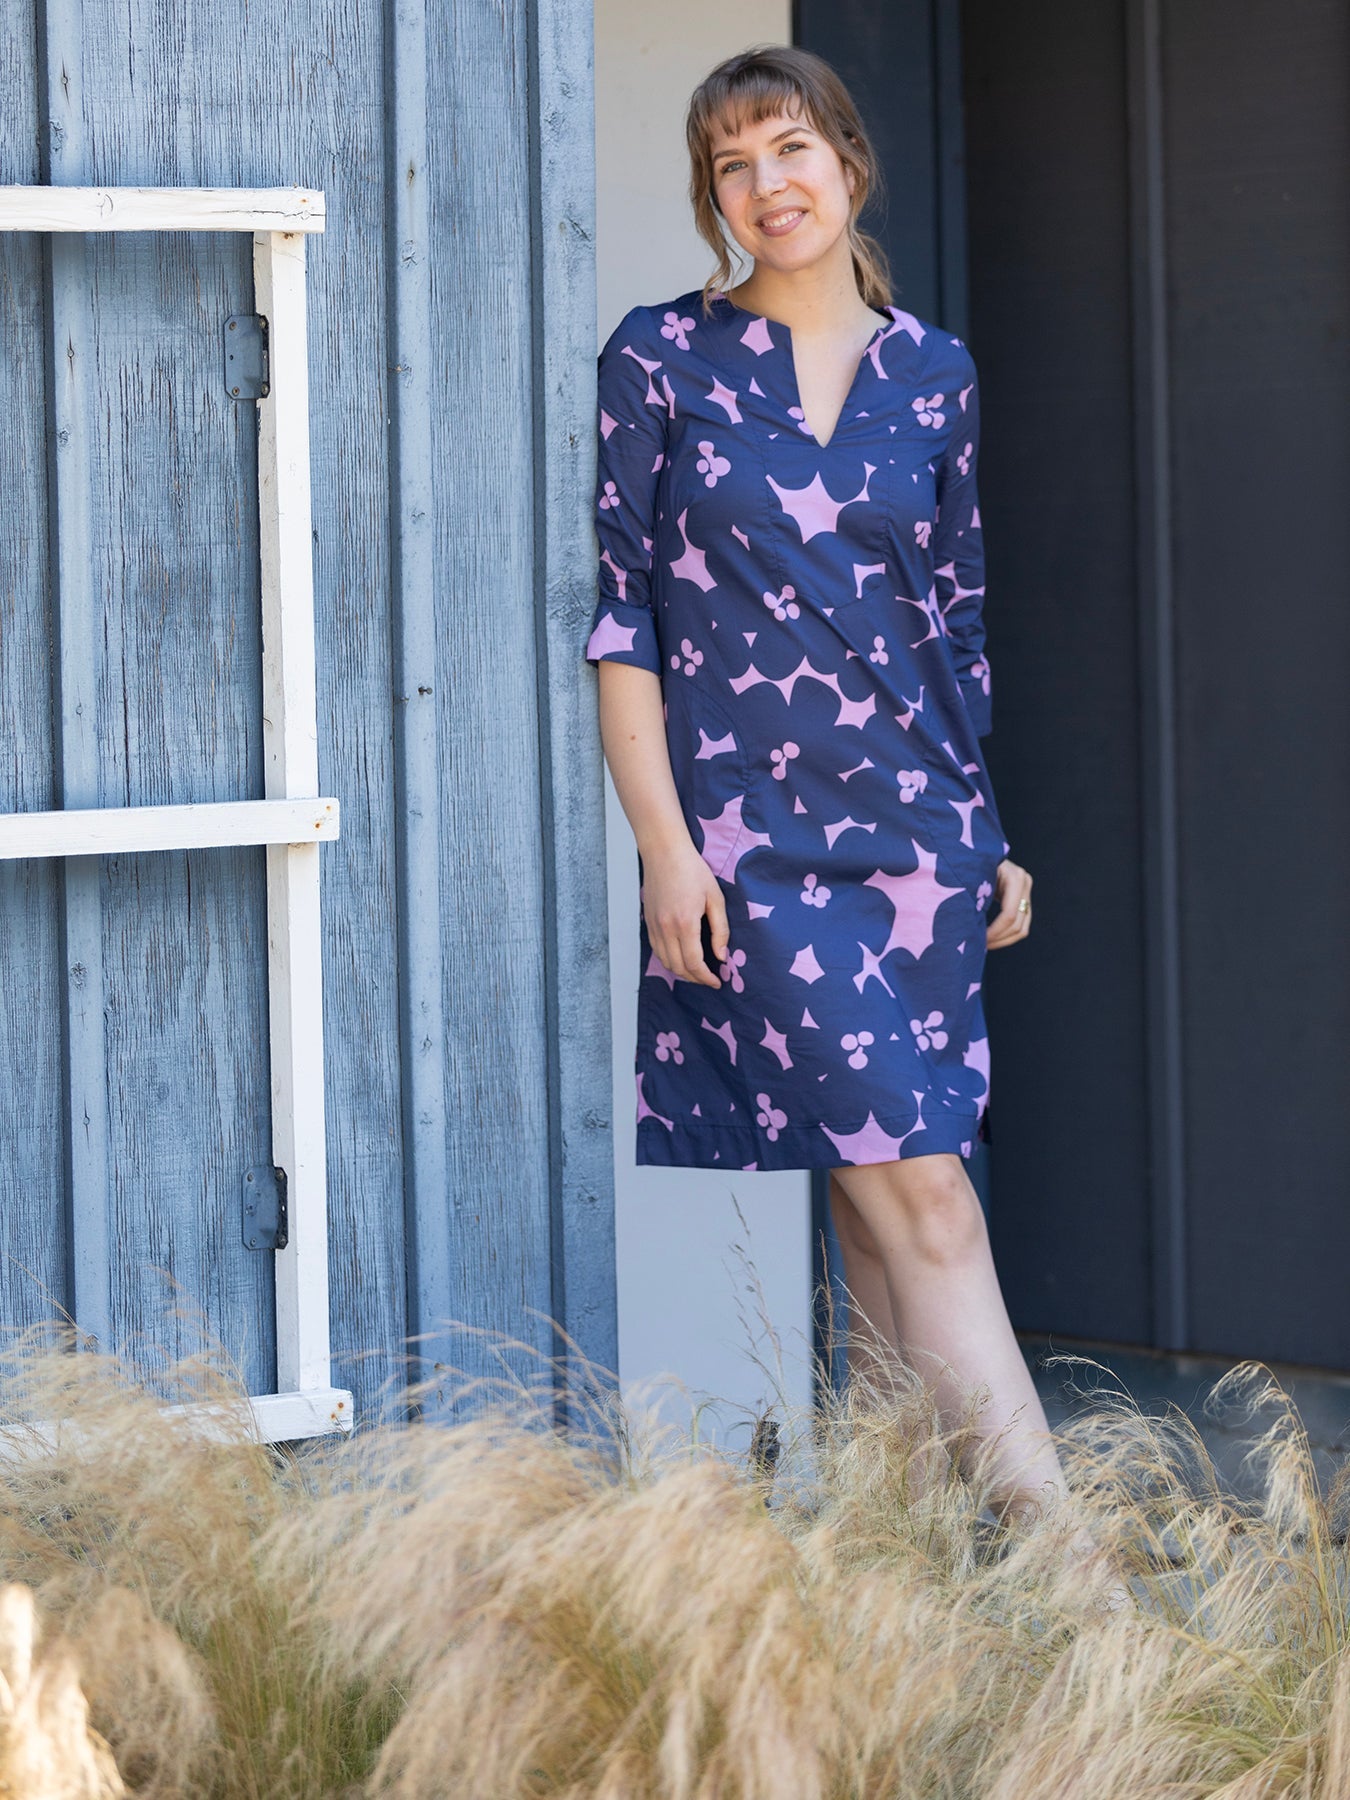 ELLIE dress Jumbo Blooms Lilac & Navy - Lesley Evers-Dress-Jumbo blooms-Navy